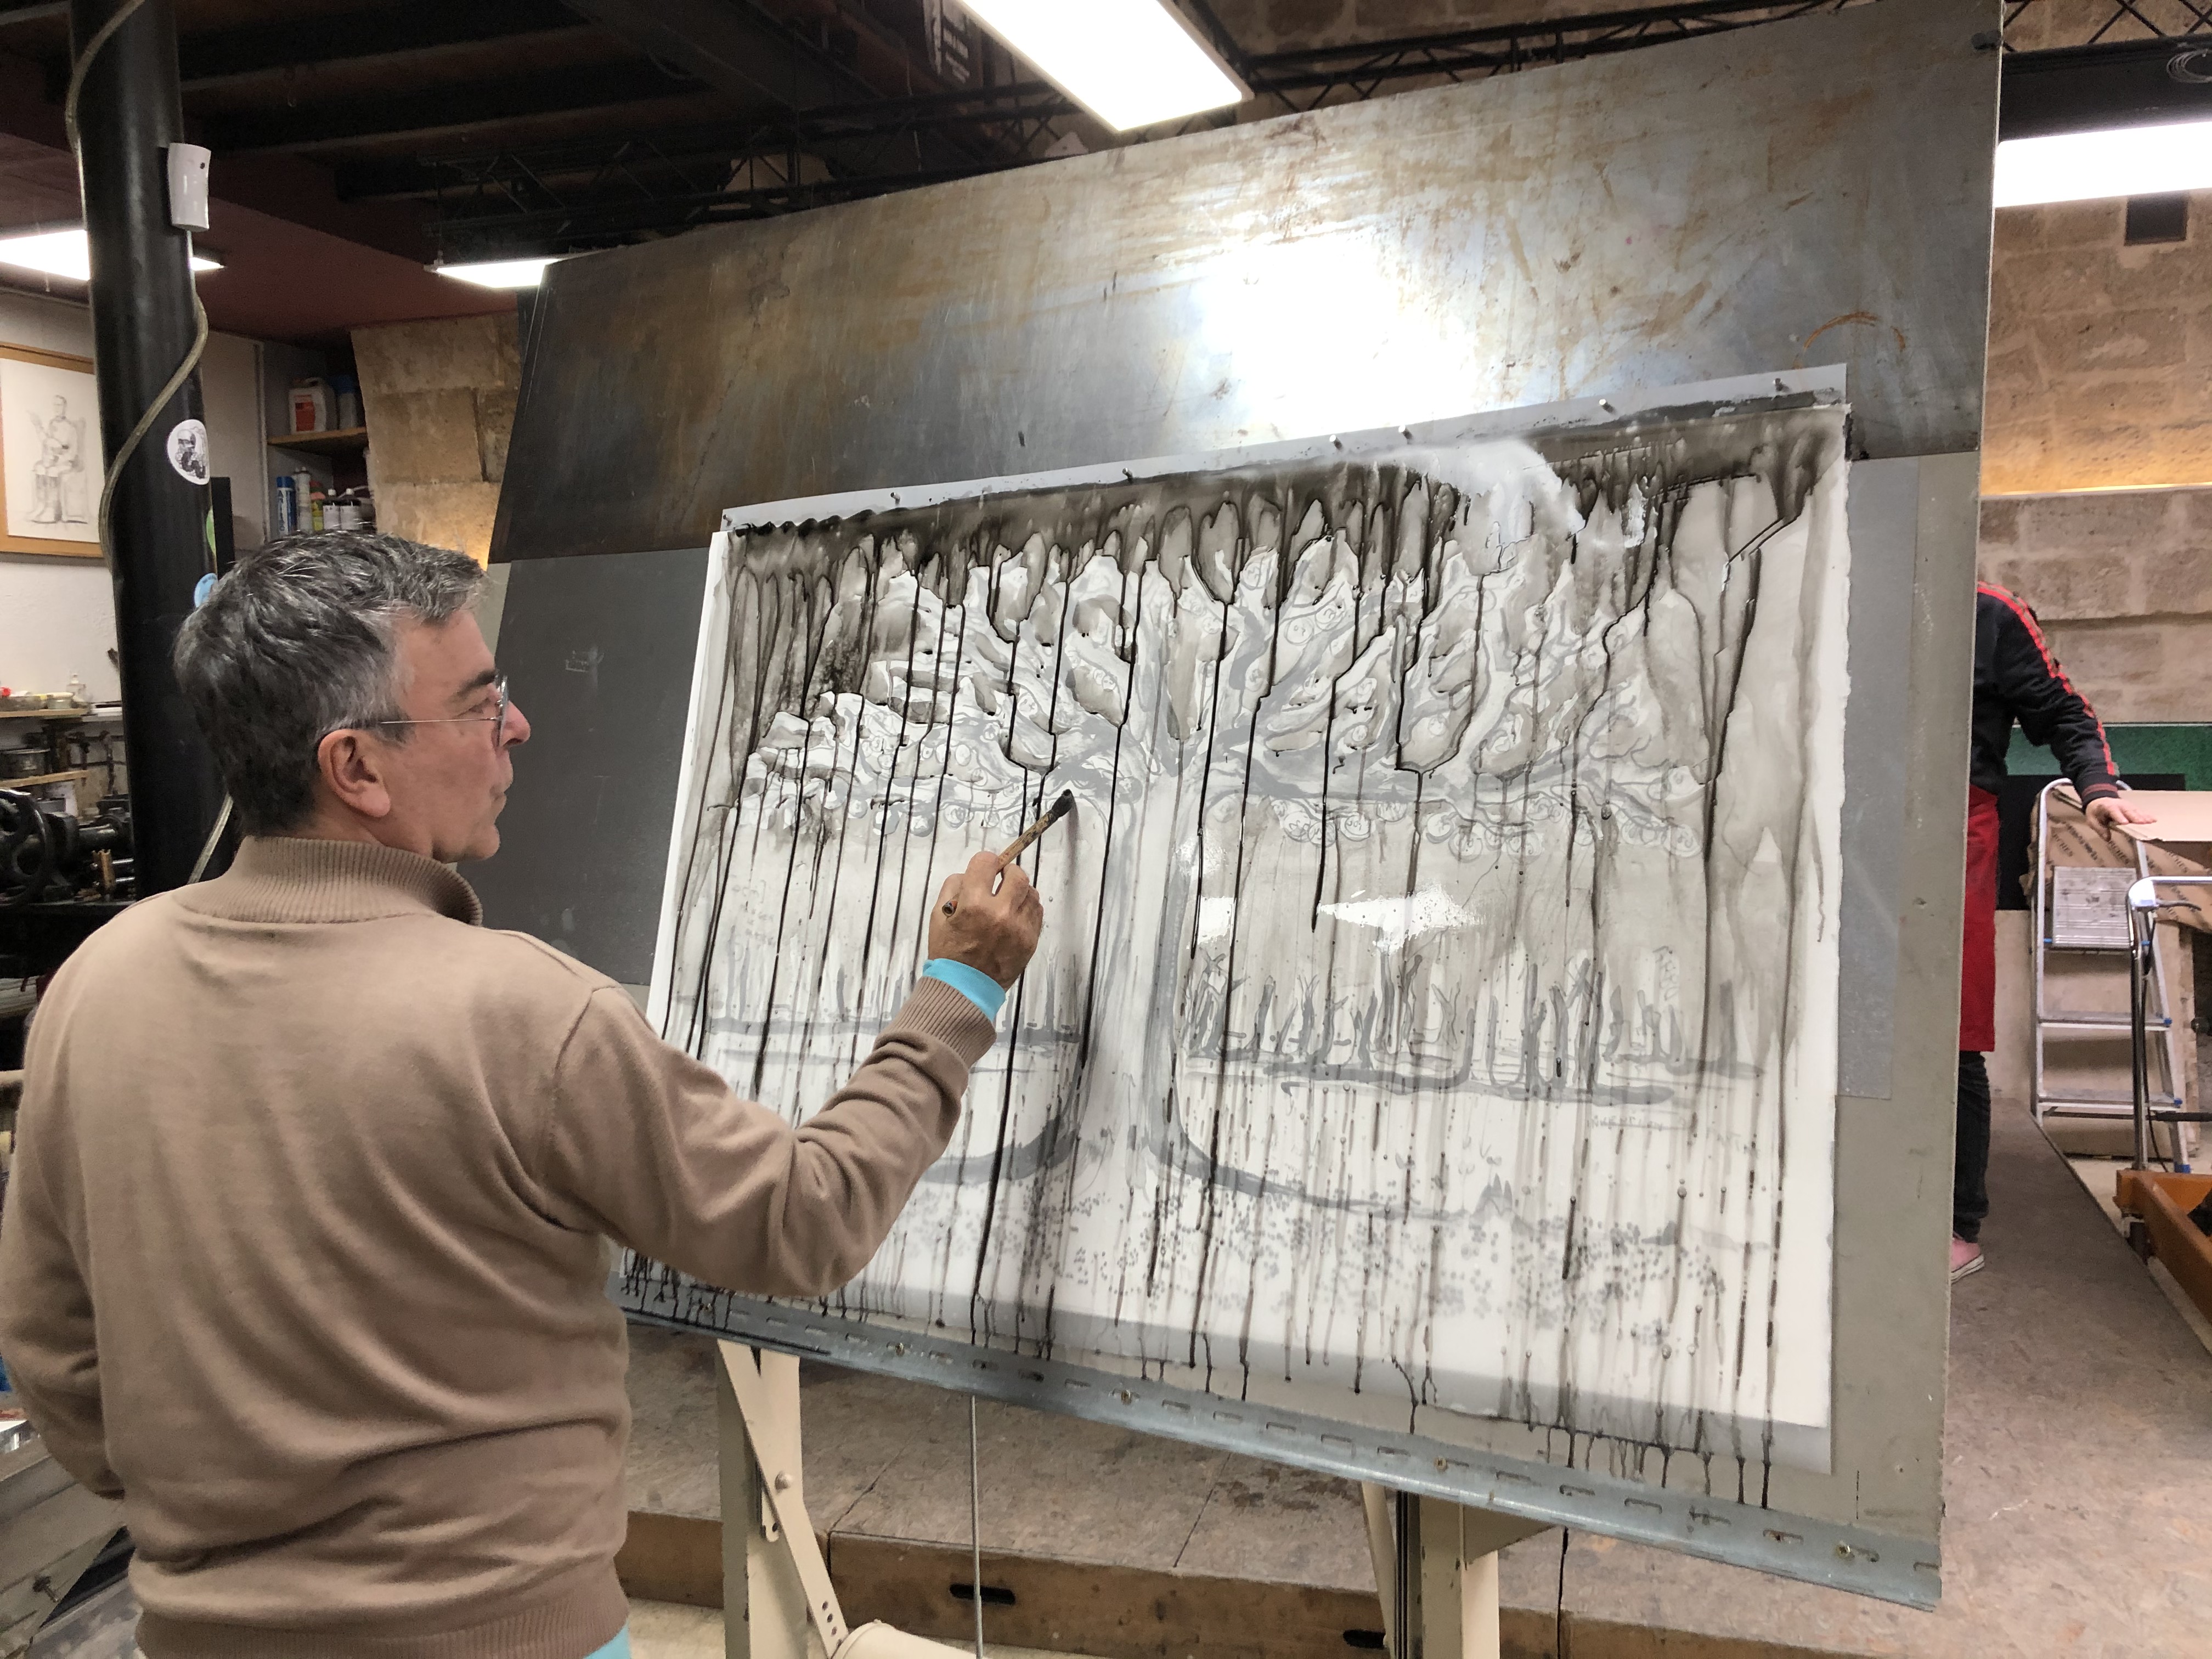 Fabrice HYBER - Pépins, 2019 -  Fabrice Hyber dessine au pinceau sur un calque appliqué sur le tirage en noir de la litohgraphie. Le calque sera ensuite insolé sur plaque pour l'impression du bleu